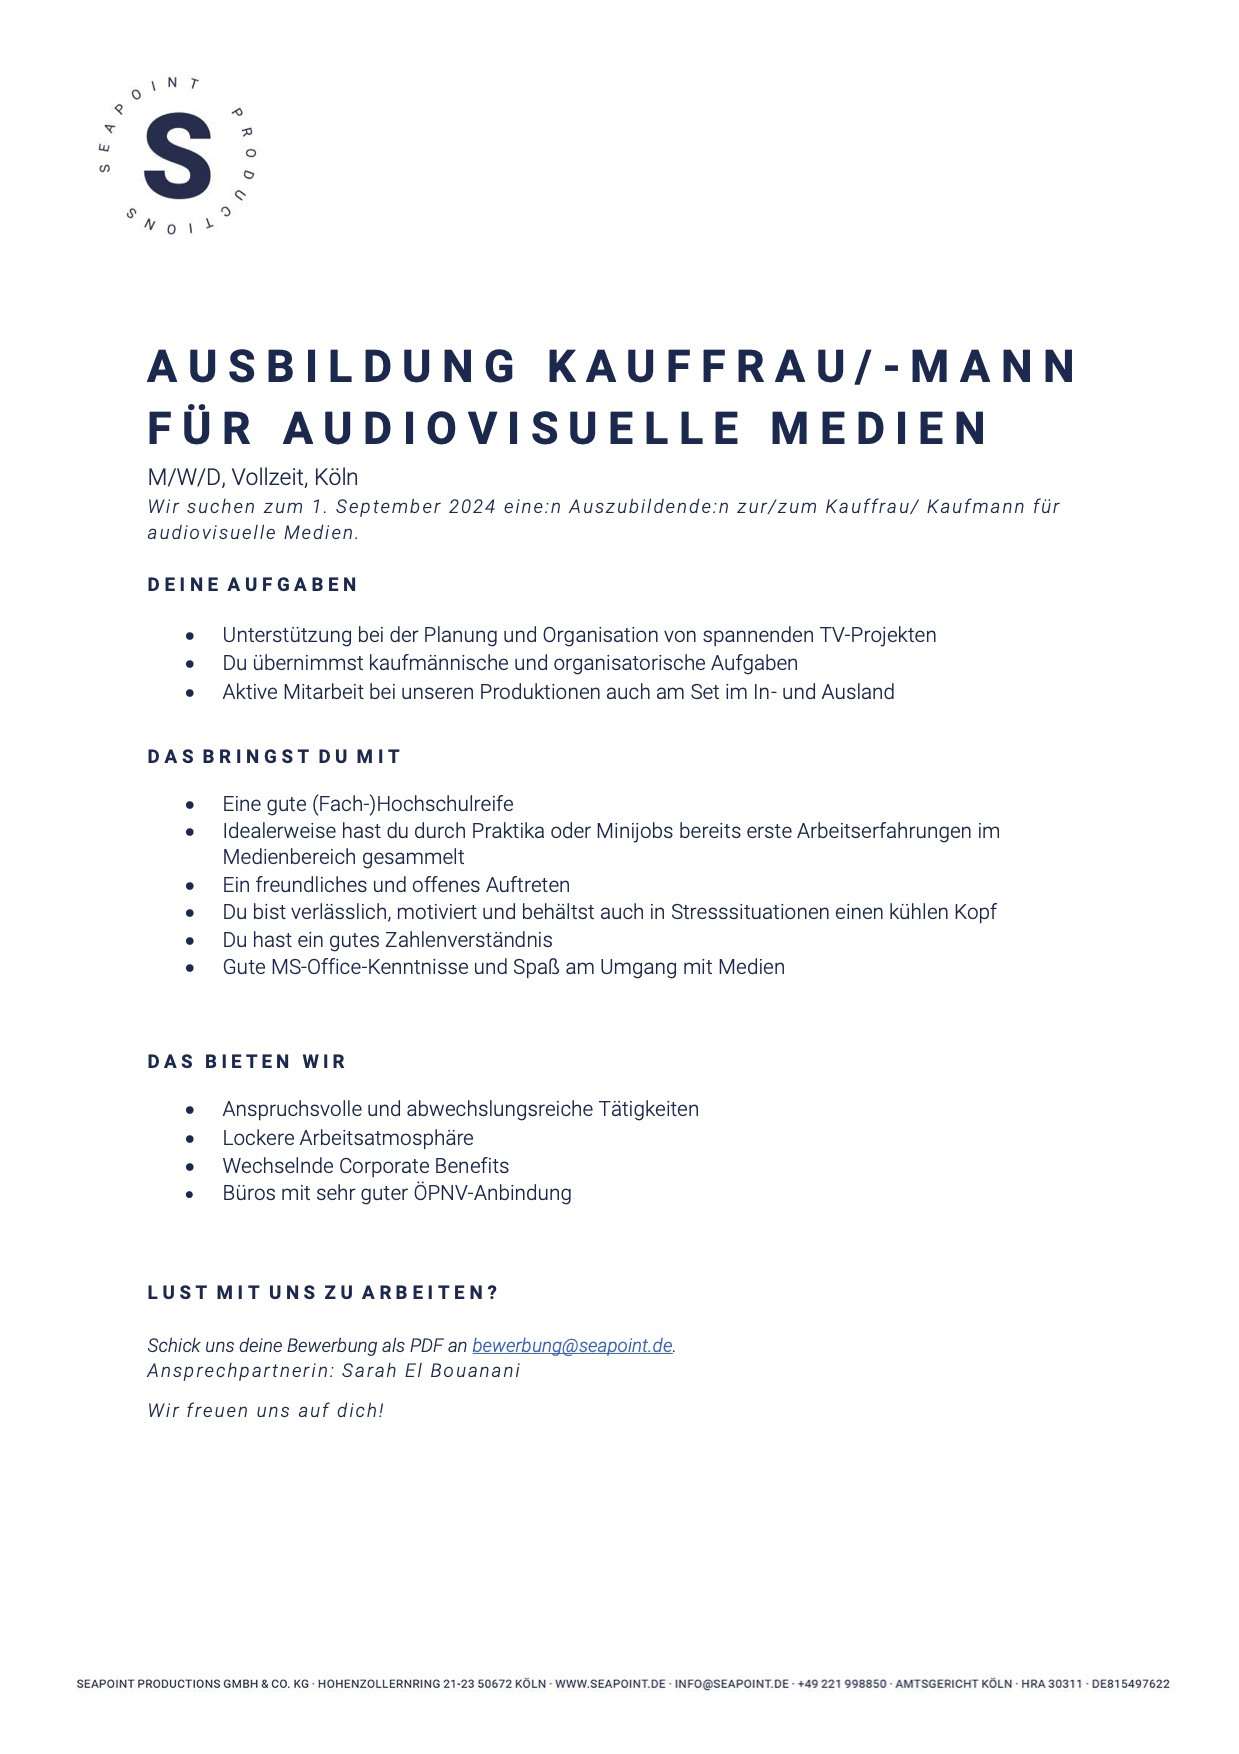 Ausbildung Kauffrau/-mann für audiovisuelle Medien